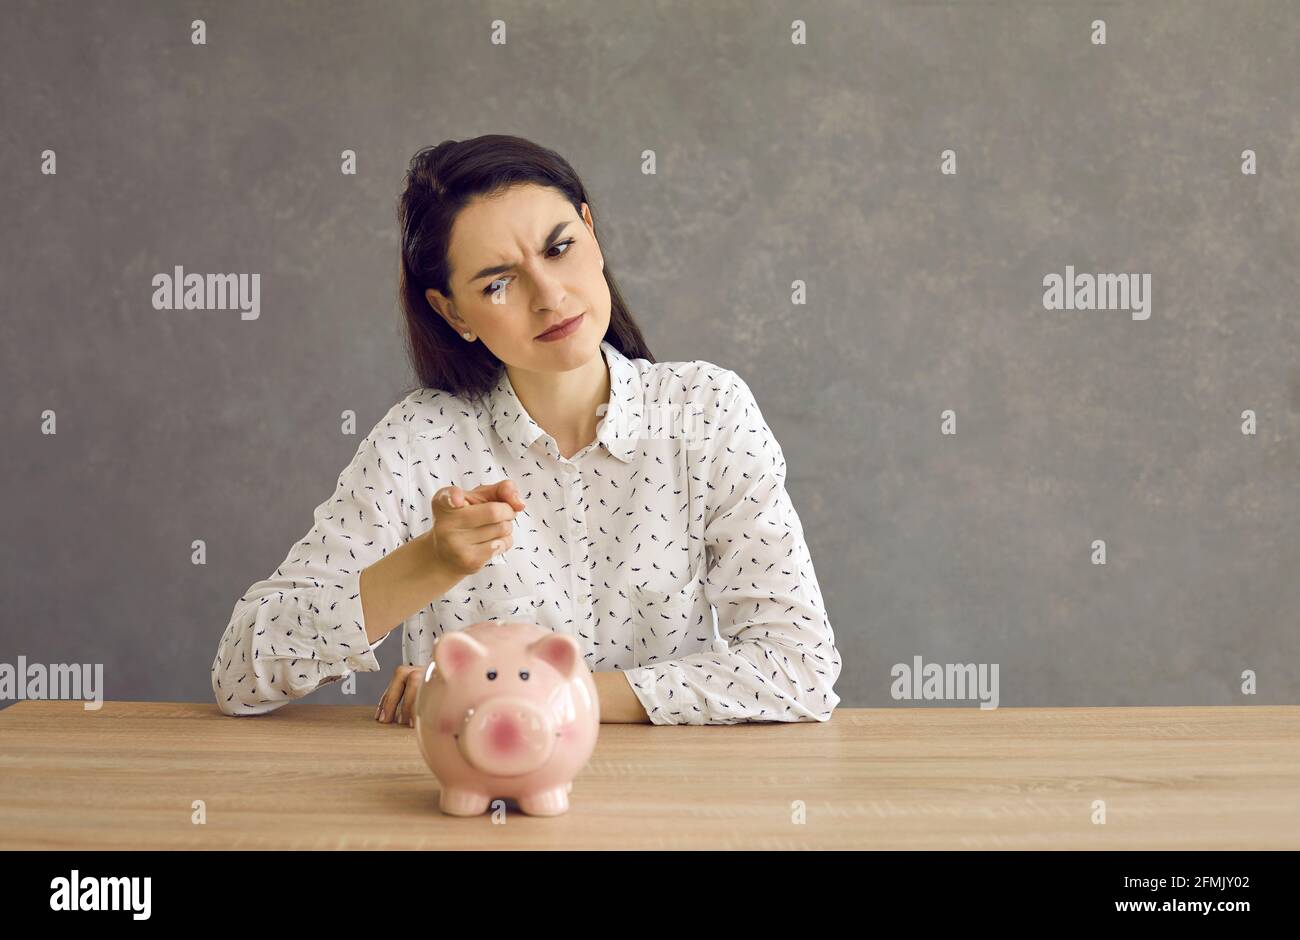 La donna ondeggia un dito punitivo contro la banca piggy come un segno che ora sarà più frugale. Foto Stock